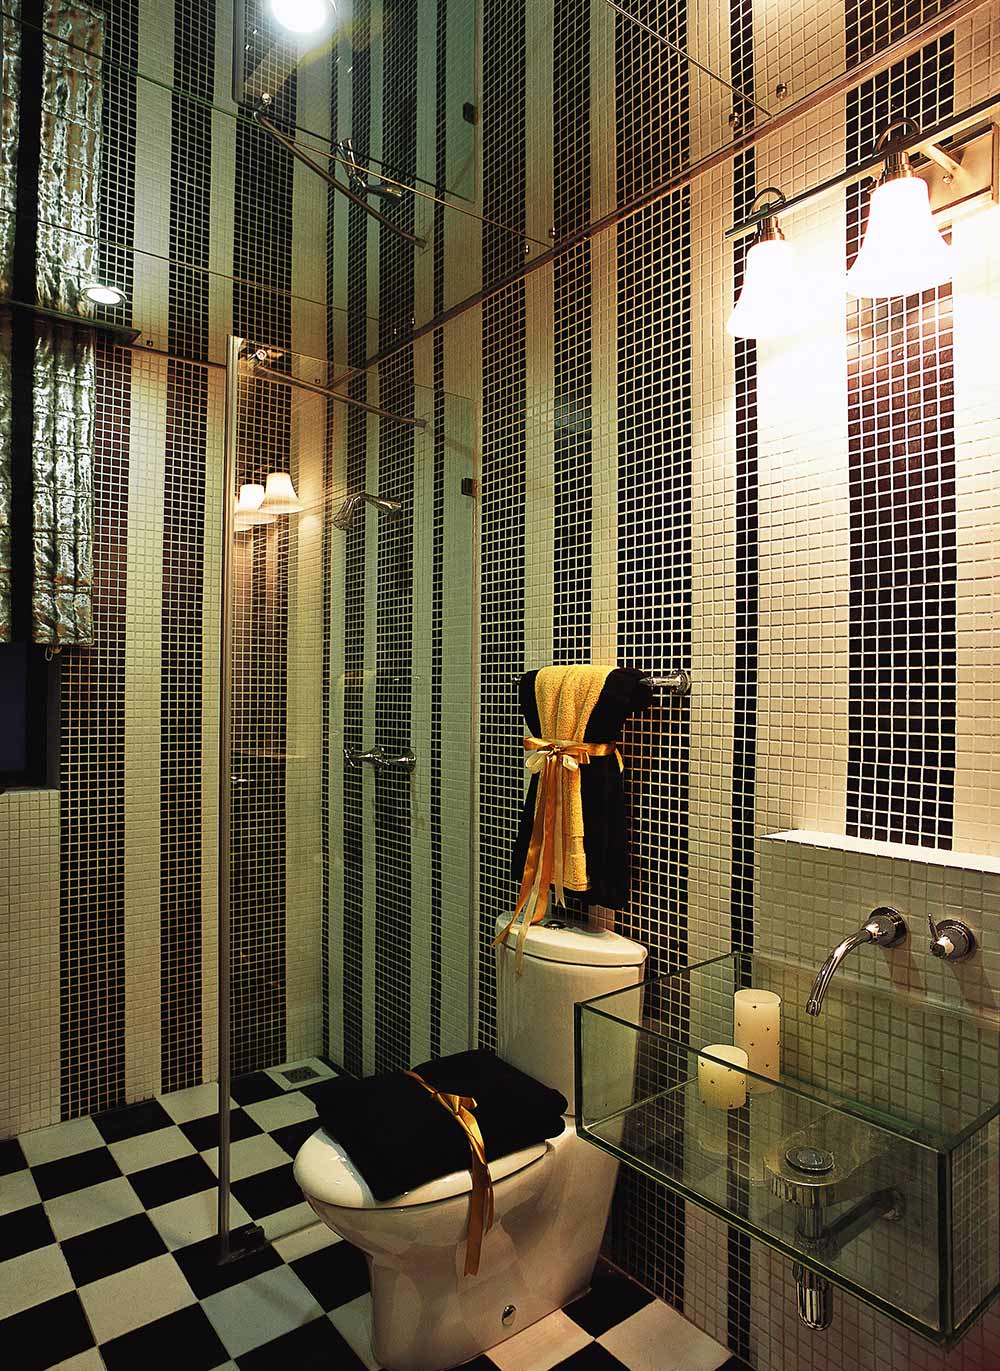 条纹创意的墙面马赛克设计与棋盘格的地砖相互呼应，大胆的设计了透明水槽，符合现代人的时尚追求。